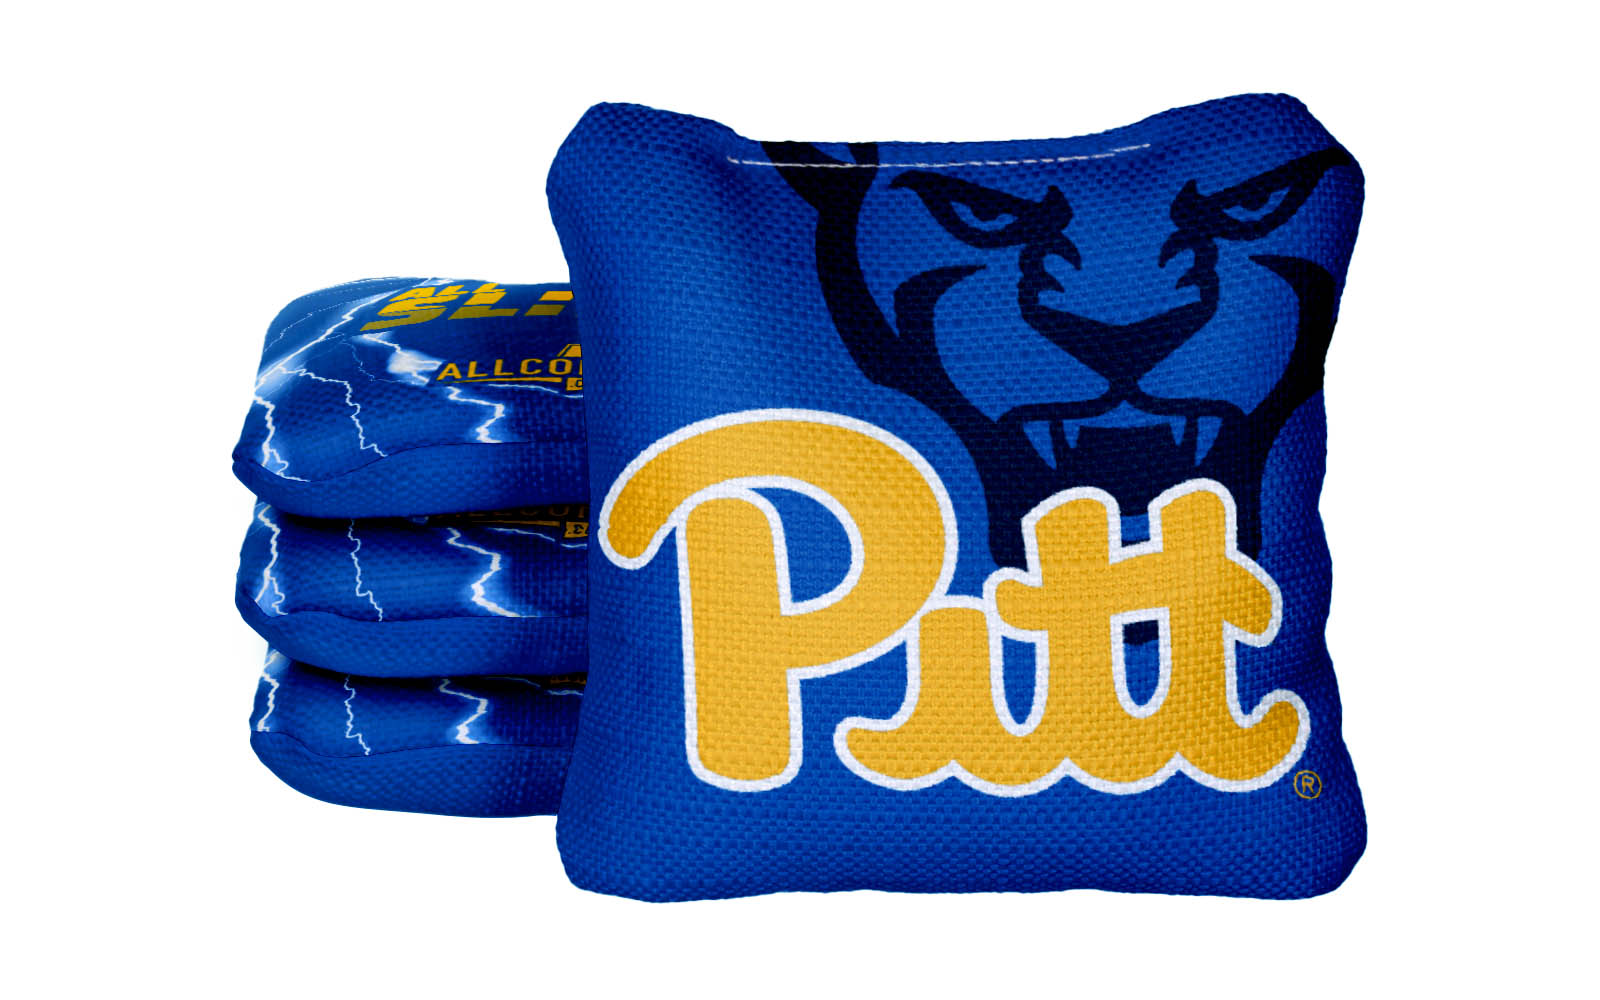 Officially Licensed Collegiate Cornhole Bags - AllCornhole All-Slide 2.0 - Set of 4 - University of Pittsburgh